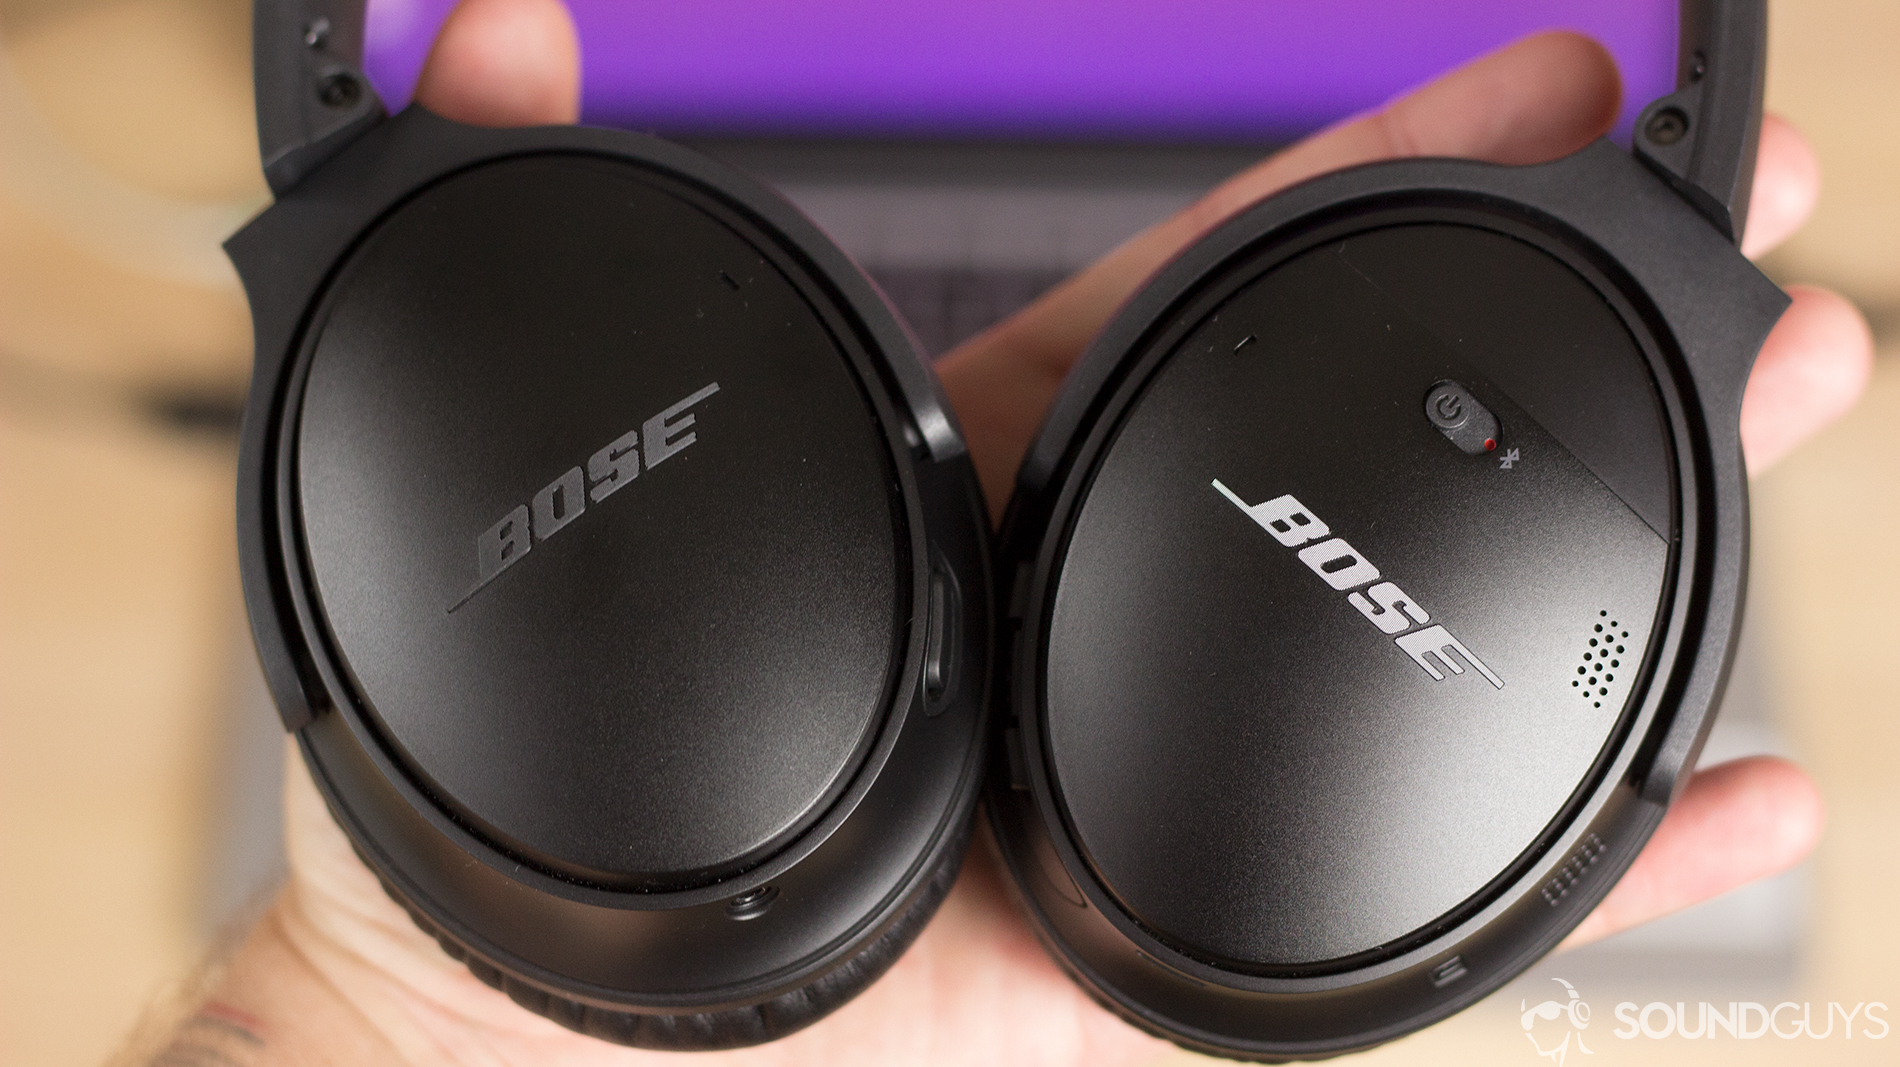 The Bose QuietComfort 35 II headphones in a man's hand.